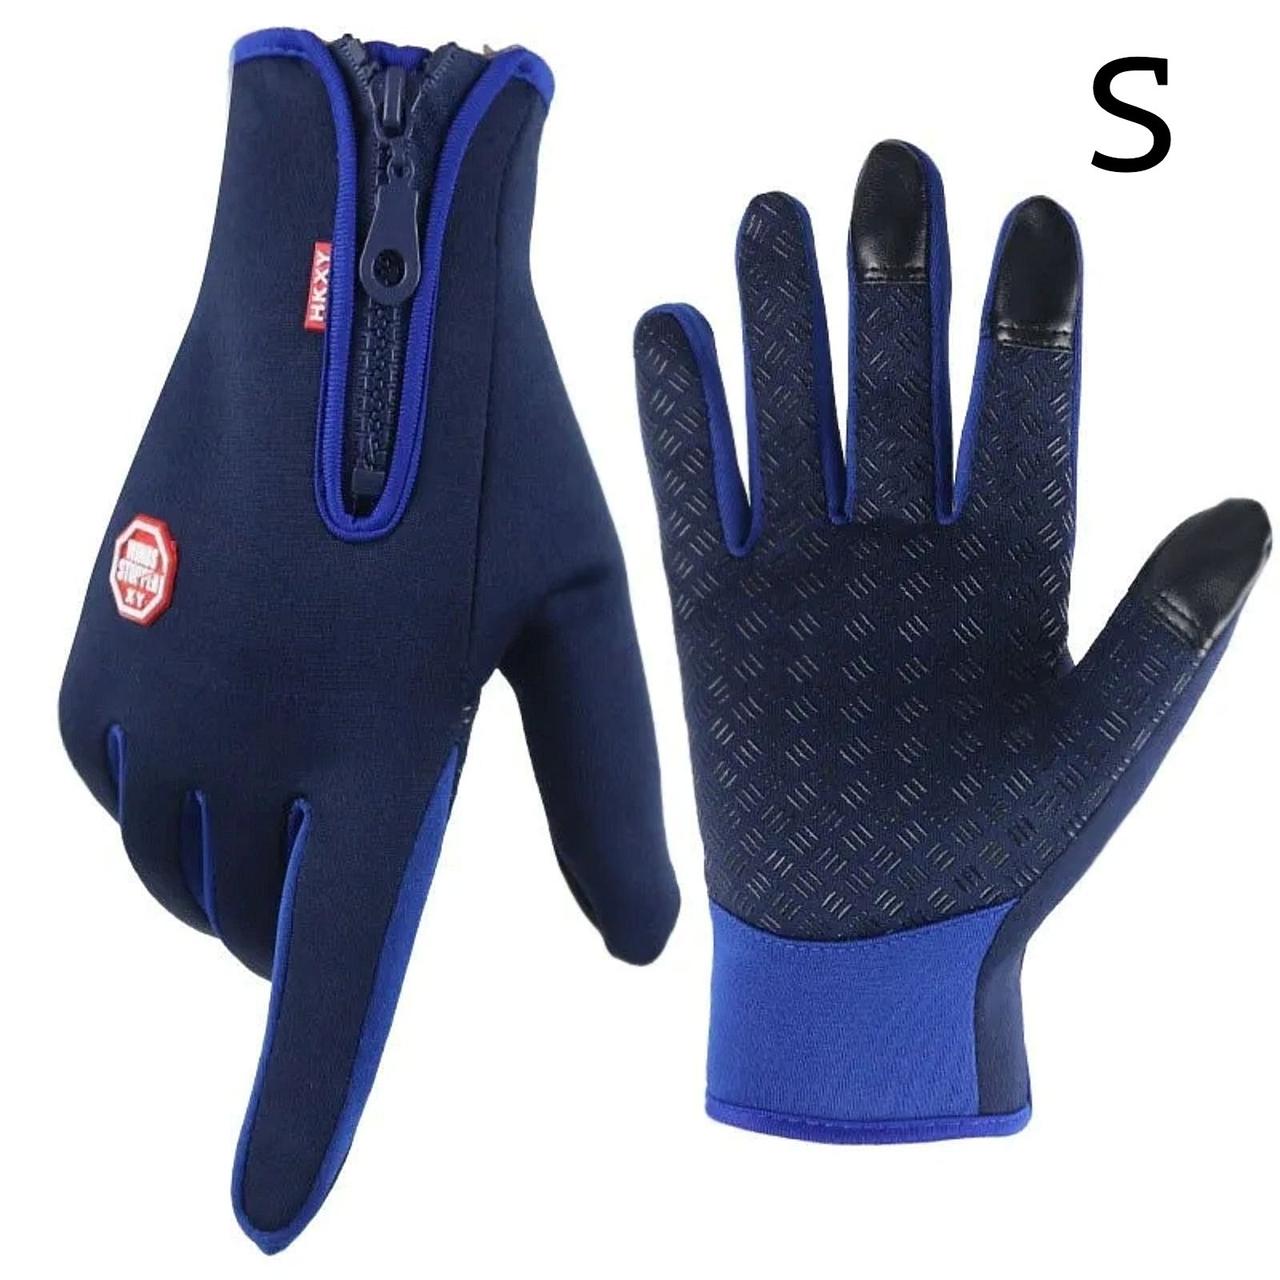 S. Сині універсальні, спортивні, зимові рукавички з сенсором для телефону. Чорні жіночі жіночі чоловічі рукавички.